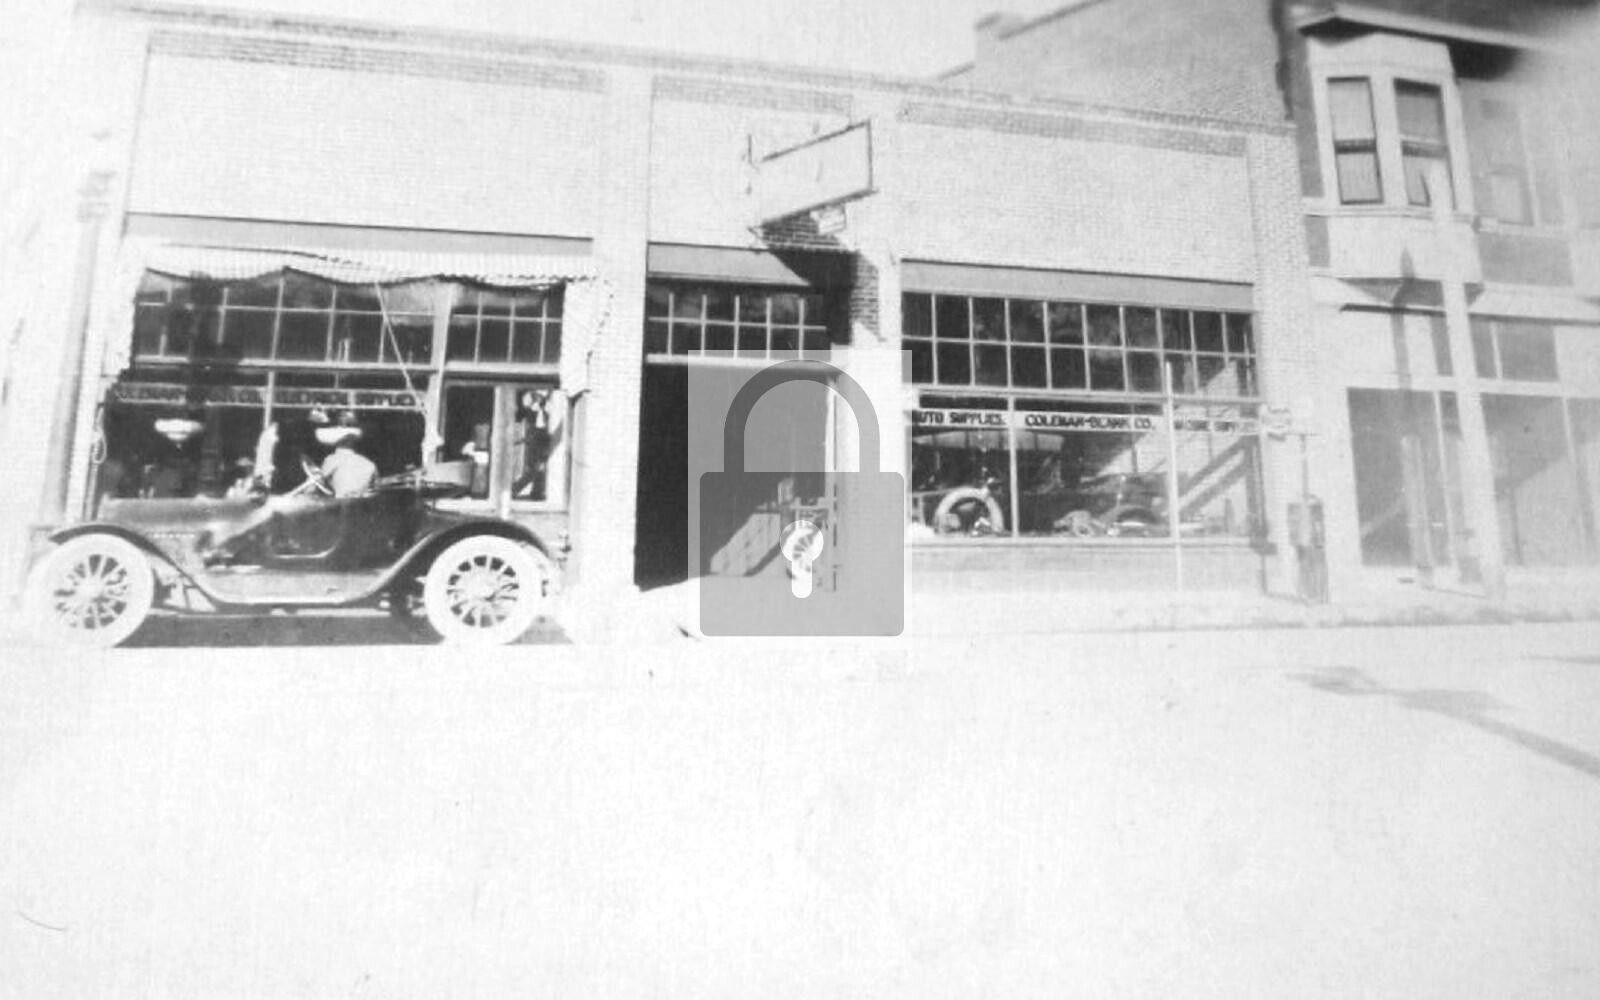 Coleman-Blank Auto Supply Co Albuquerque New Mexico NM - 8x10 Reprint